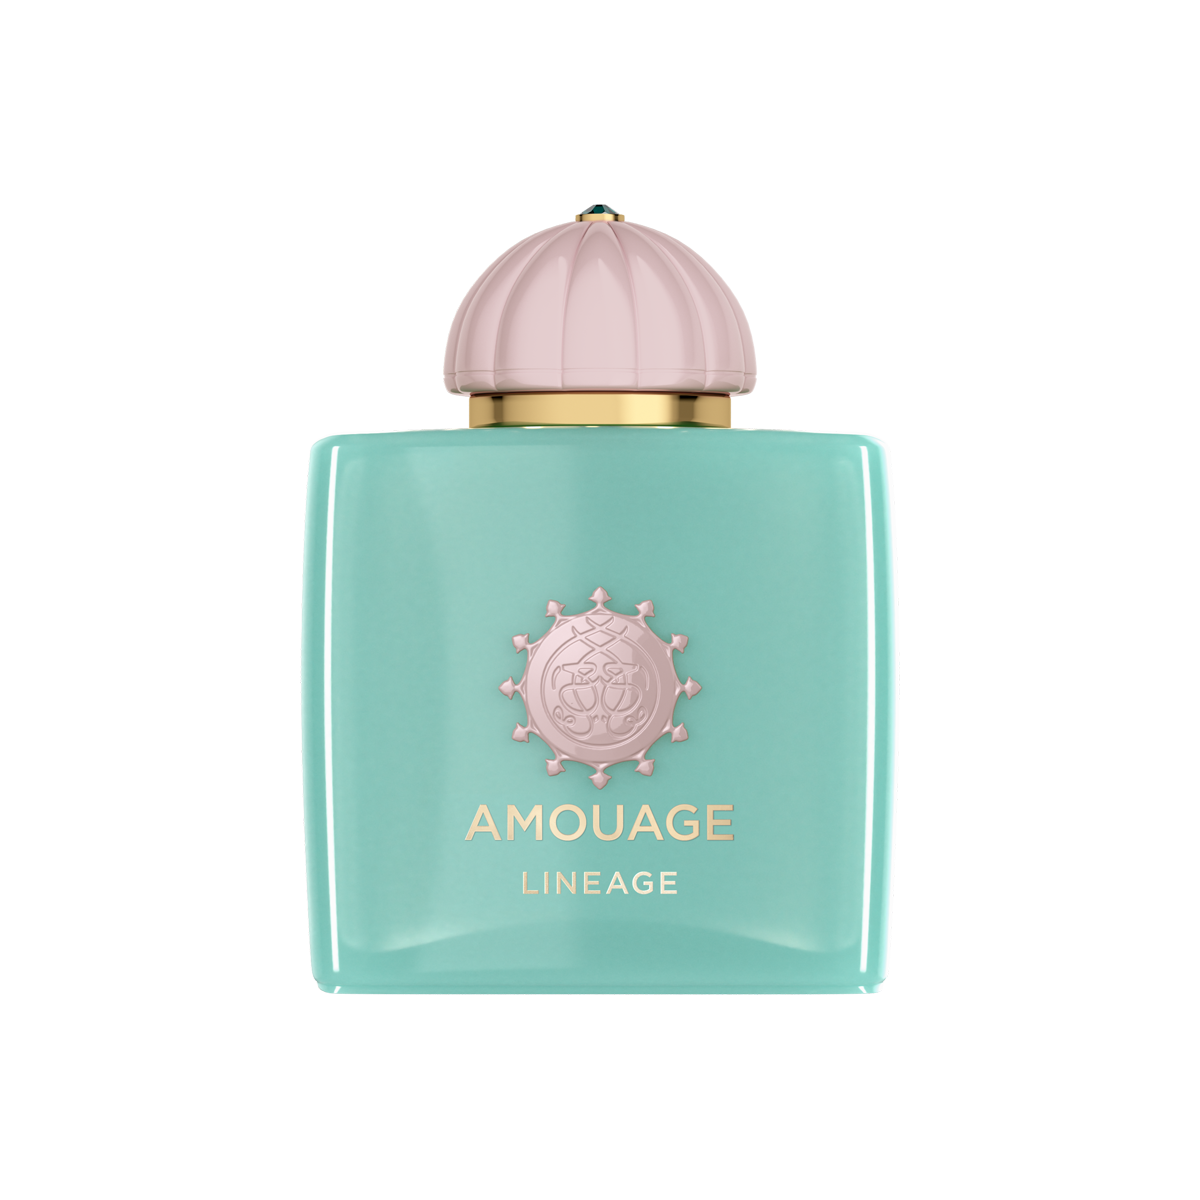 Amouage - Lineage Woman Eau de Parfum